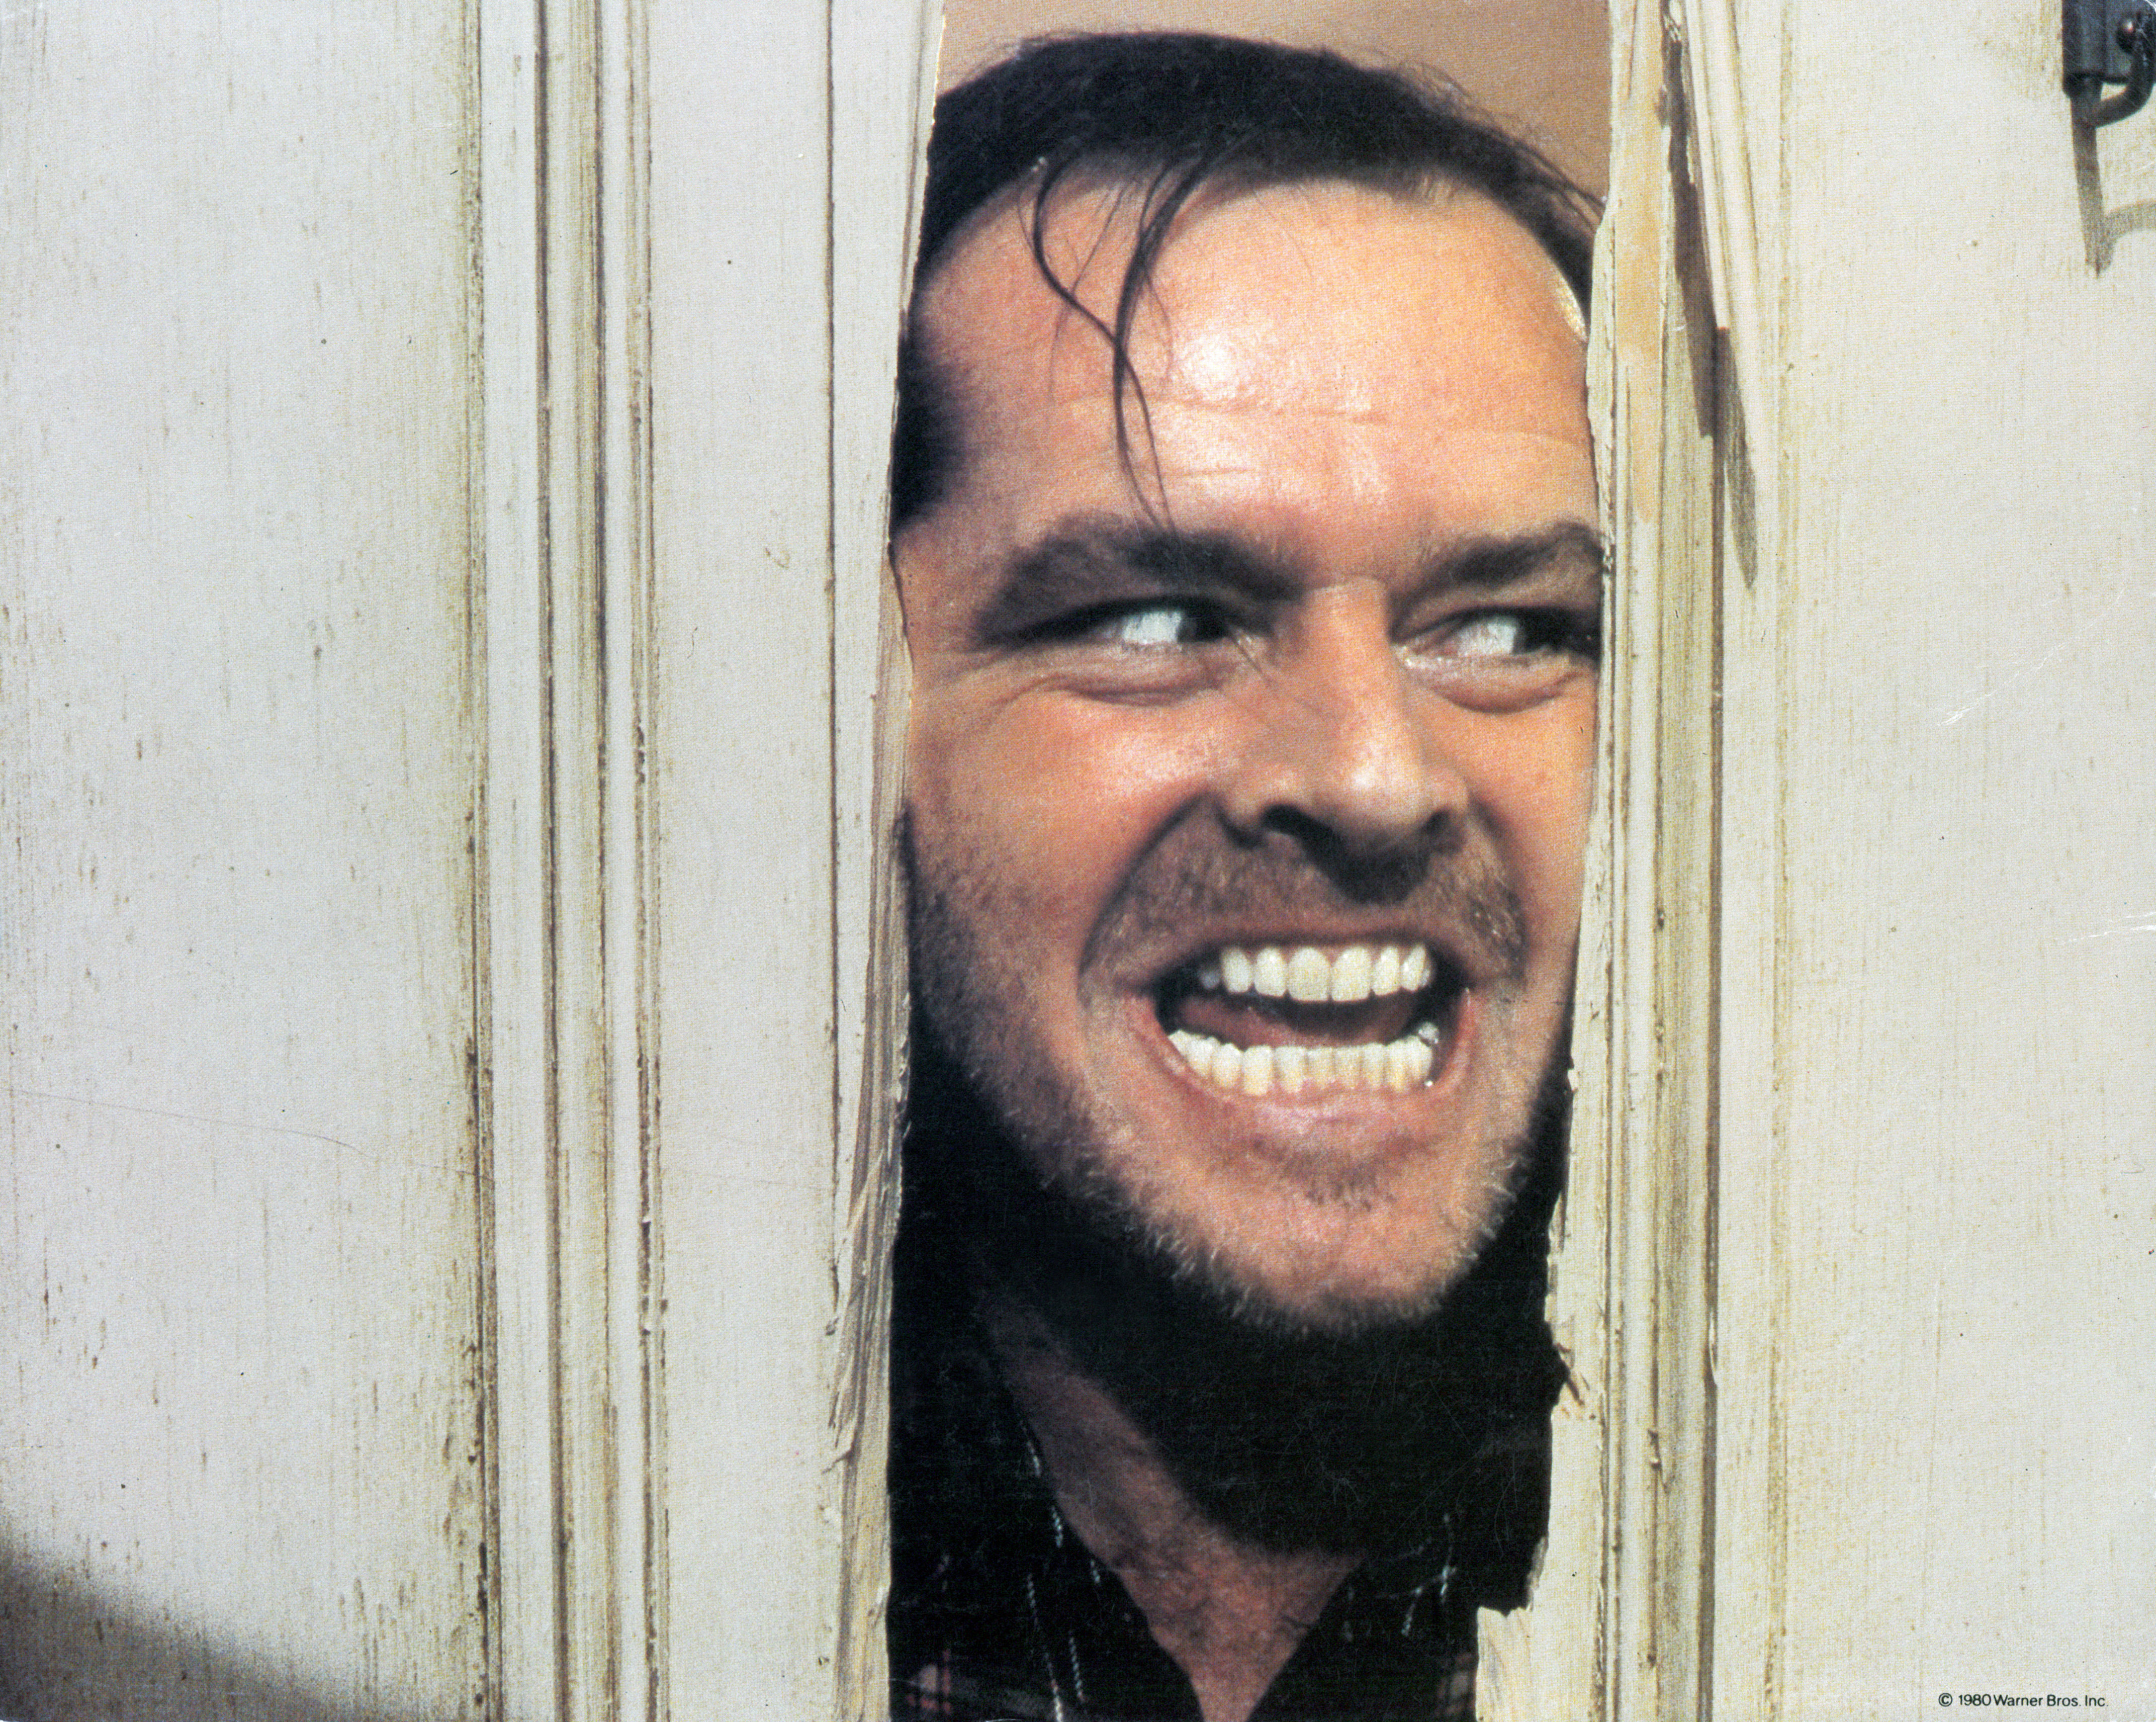   Jack Nicholson in einer klassischen Szene aus dem Film